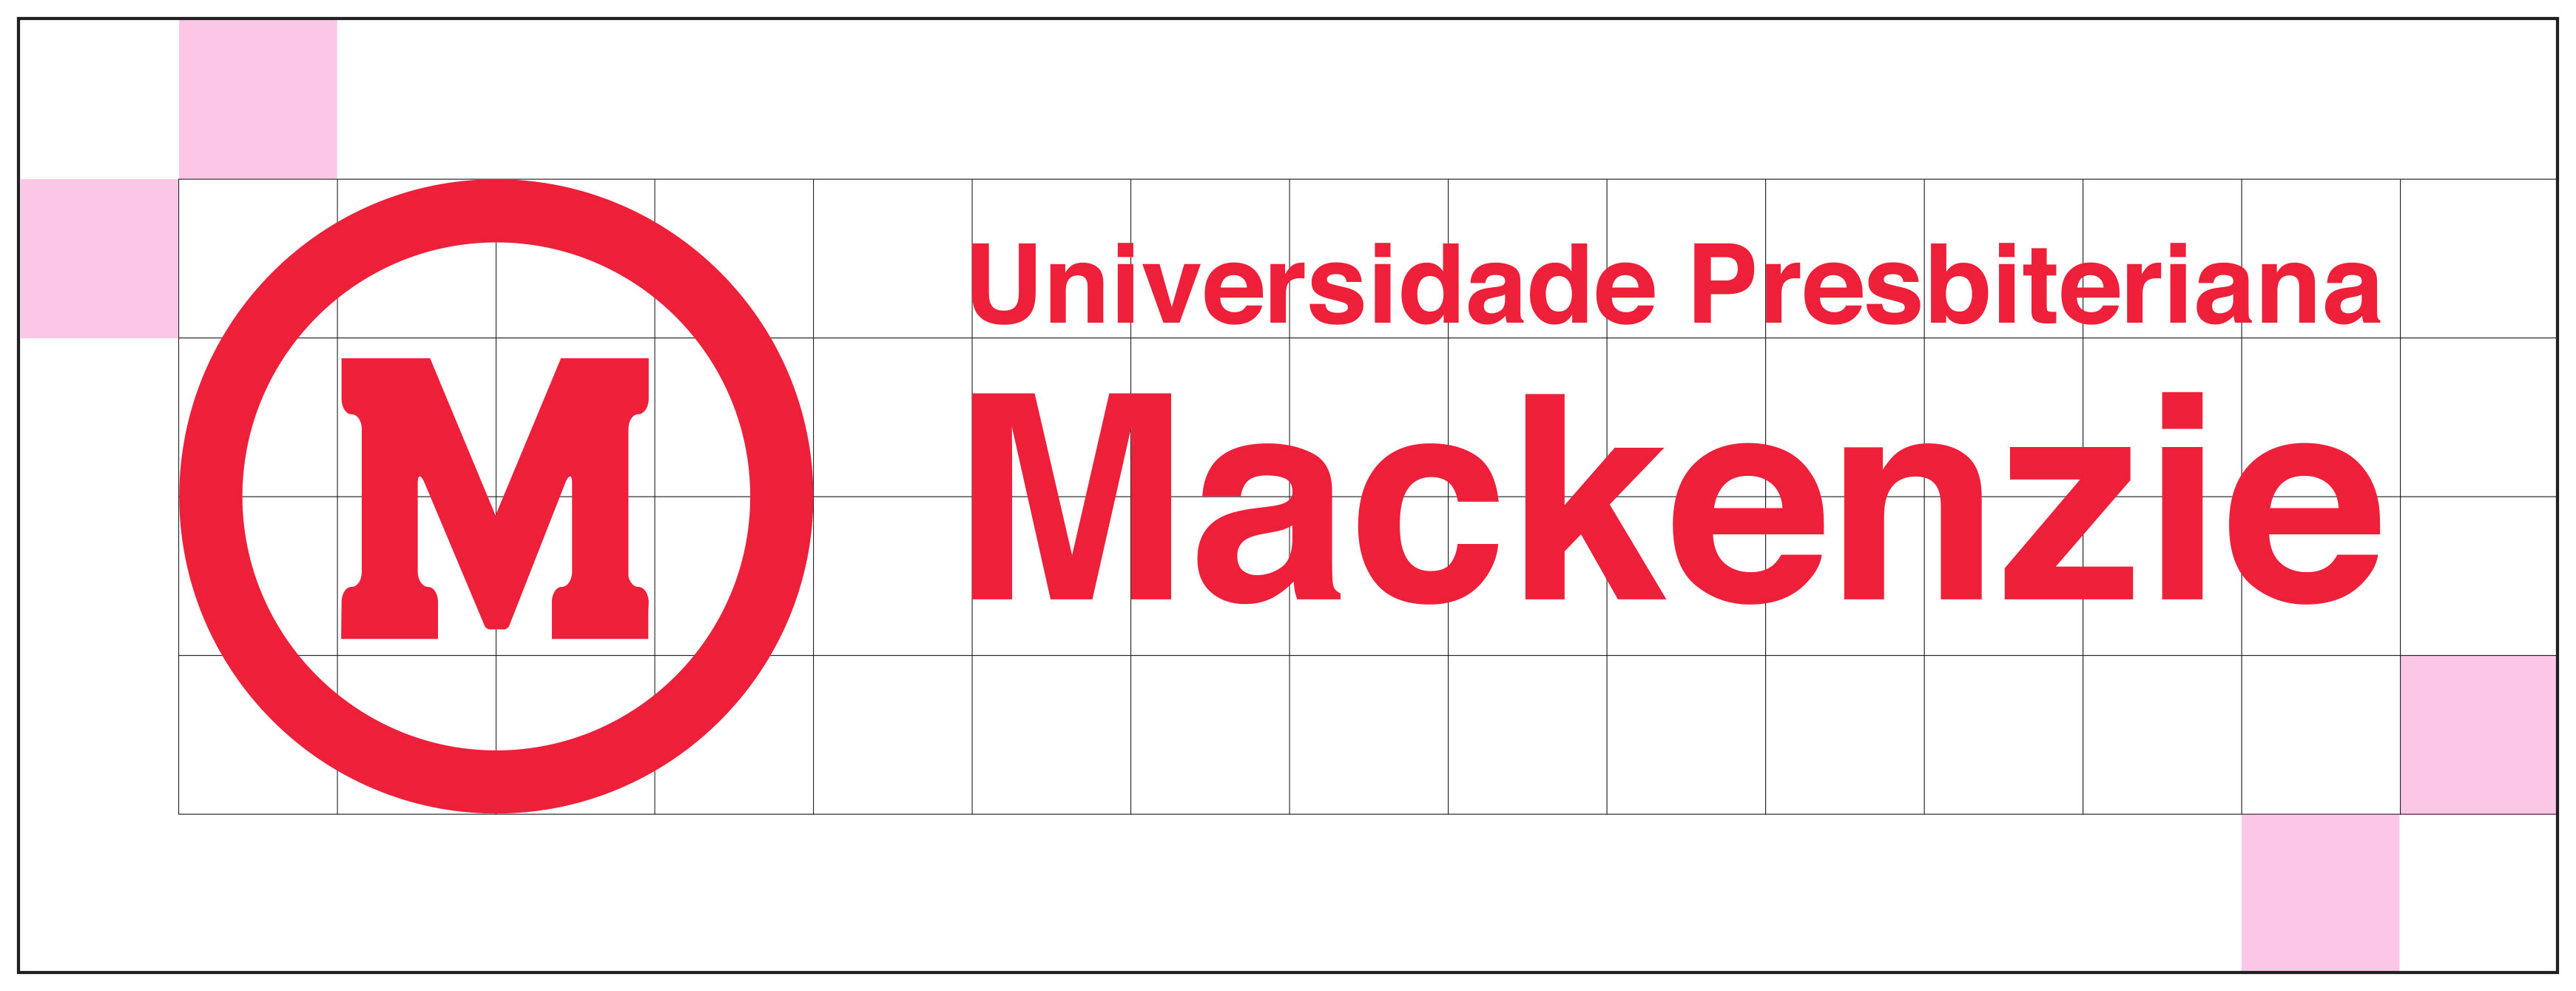 Logo da Universidade Presbiteriano Mackenzie